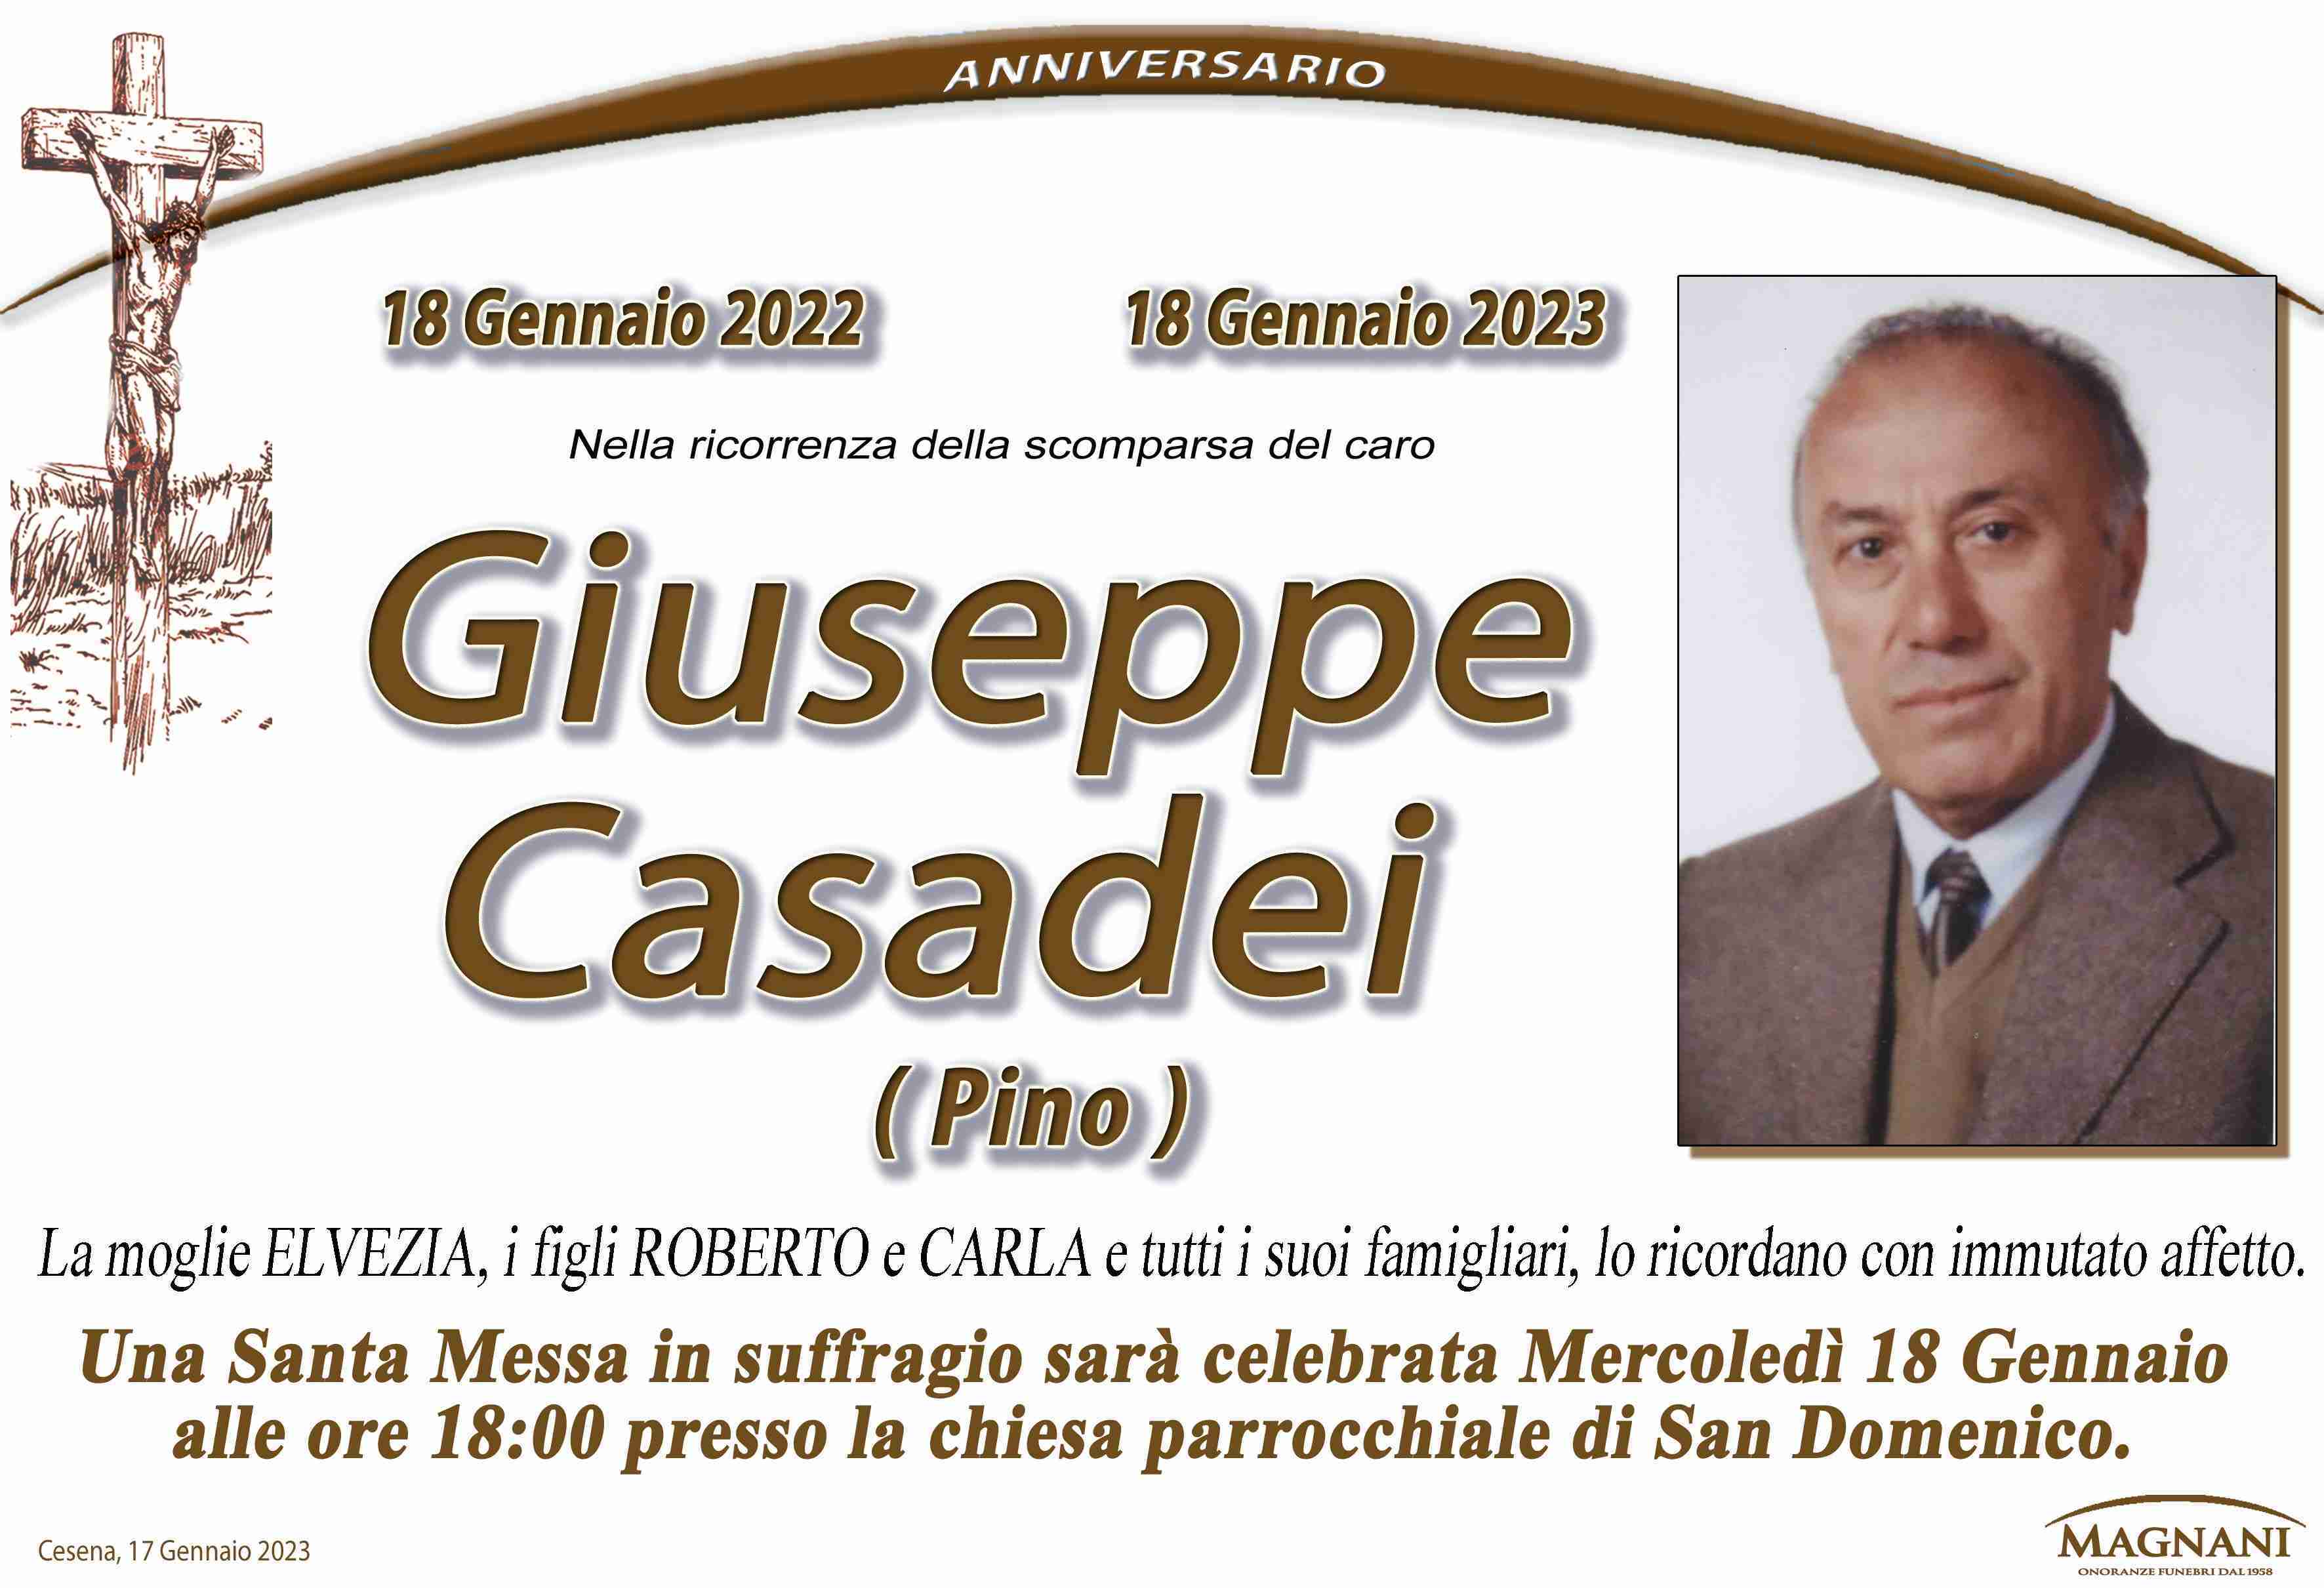 Giuseppe Casadei